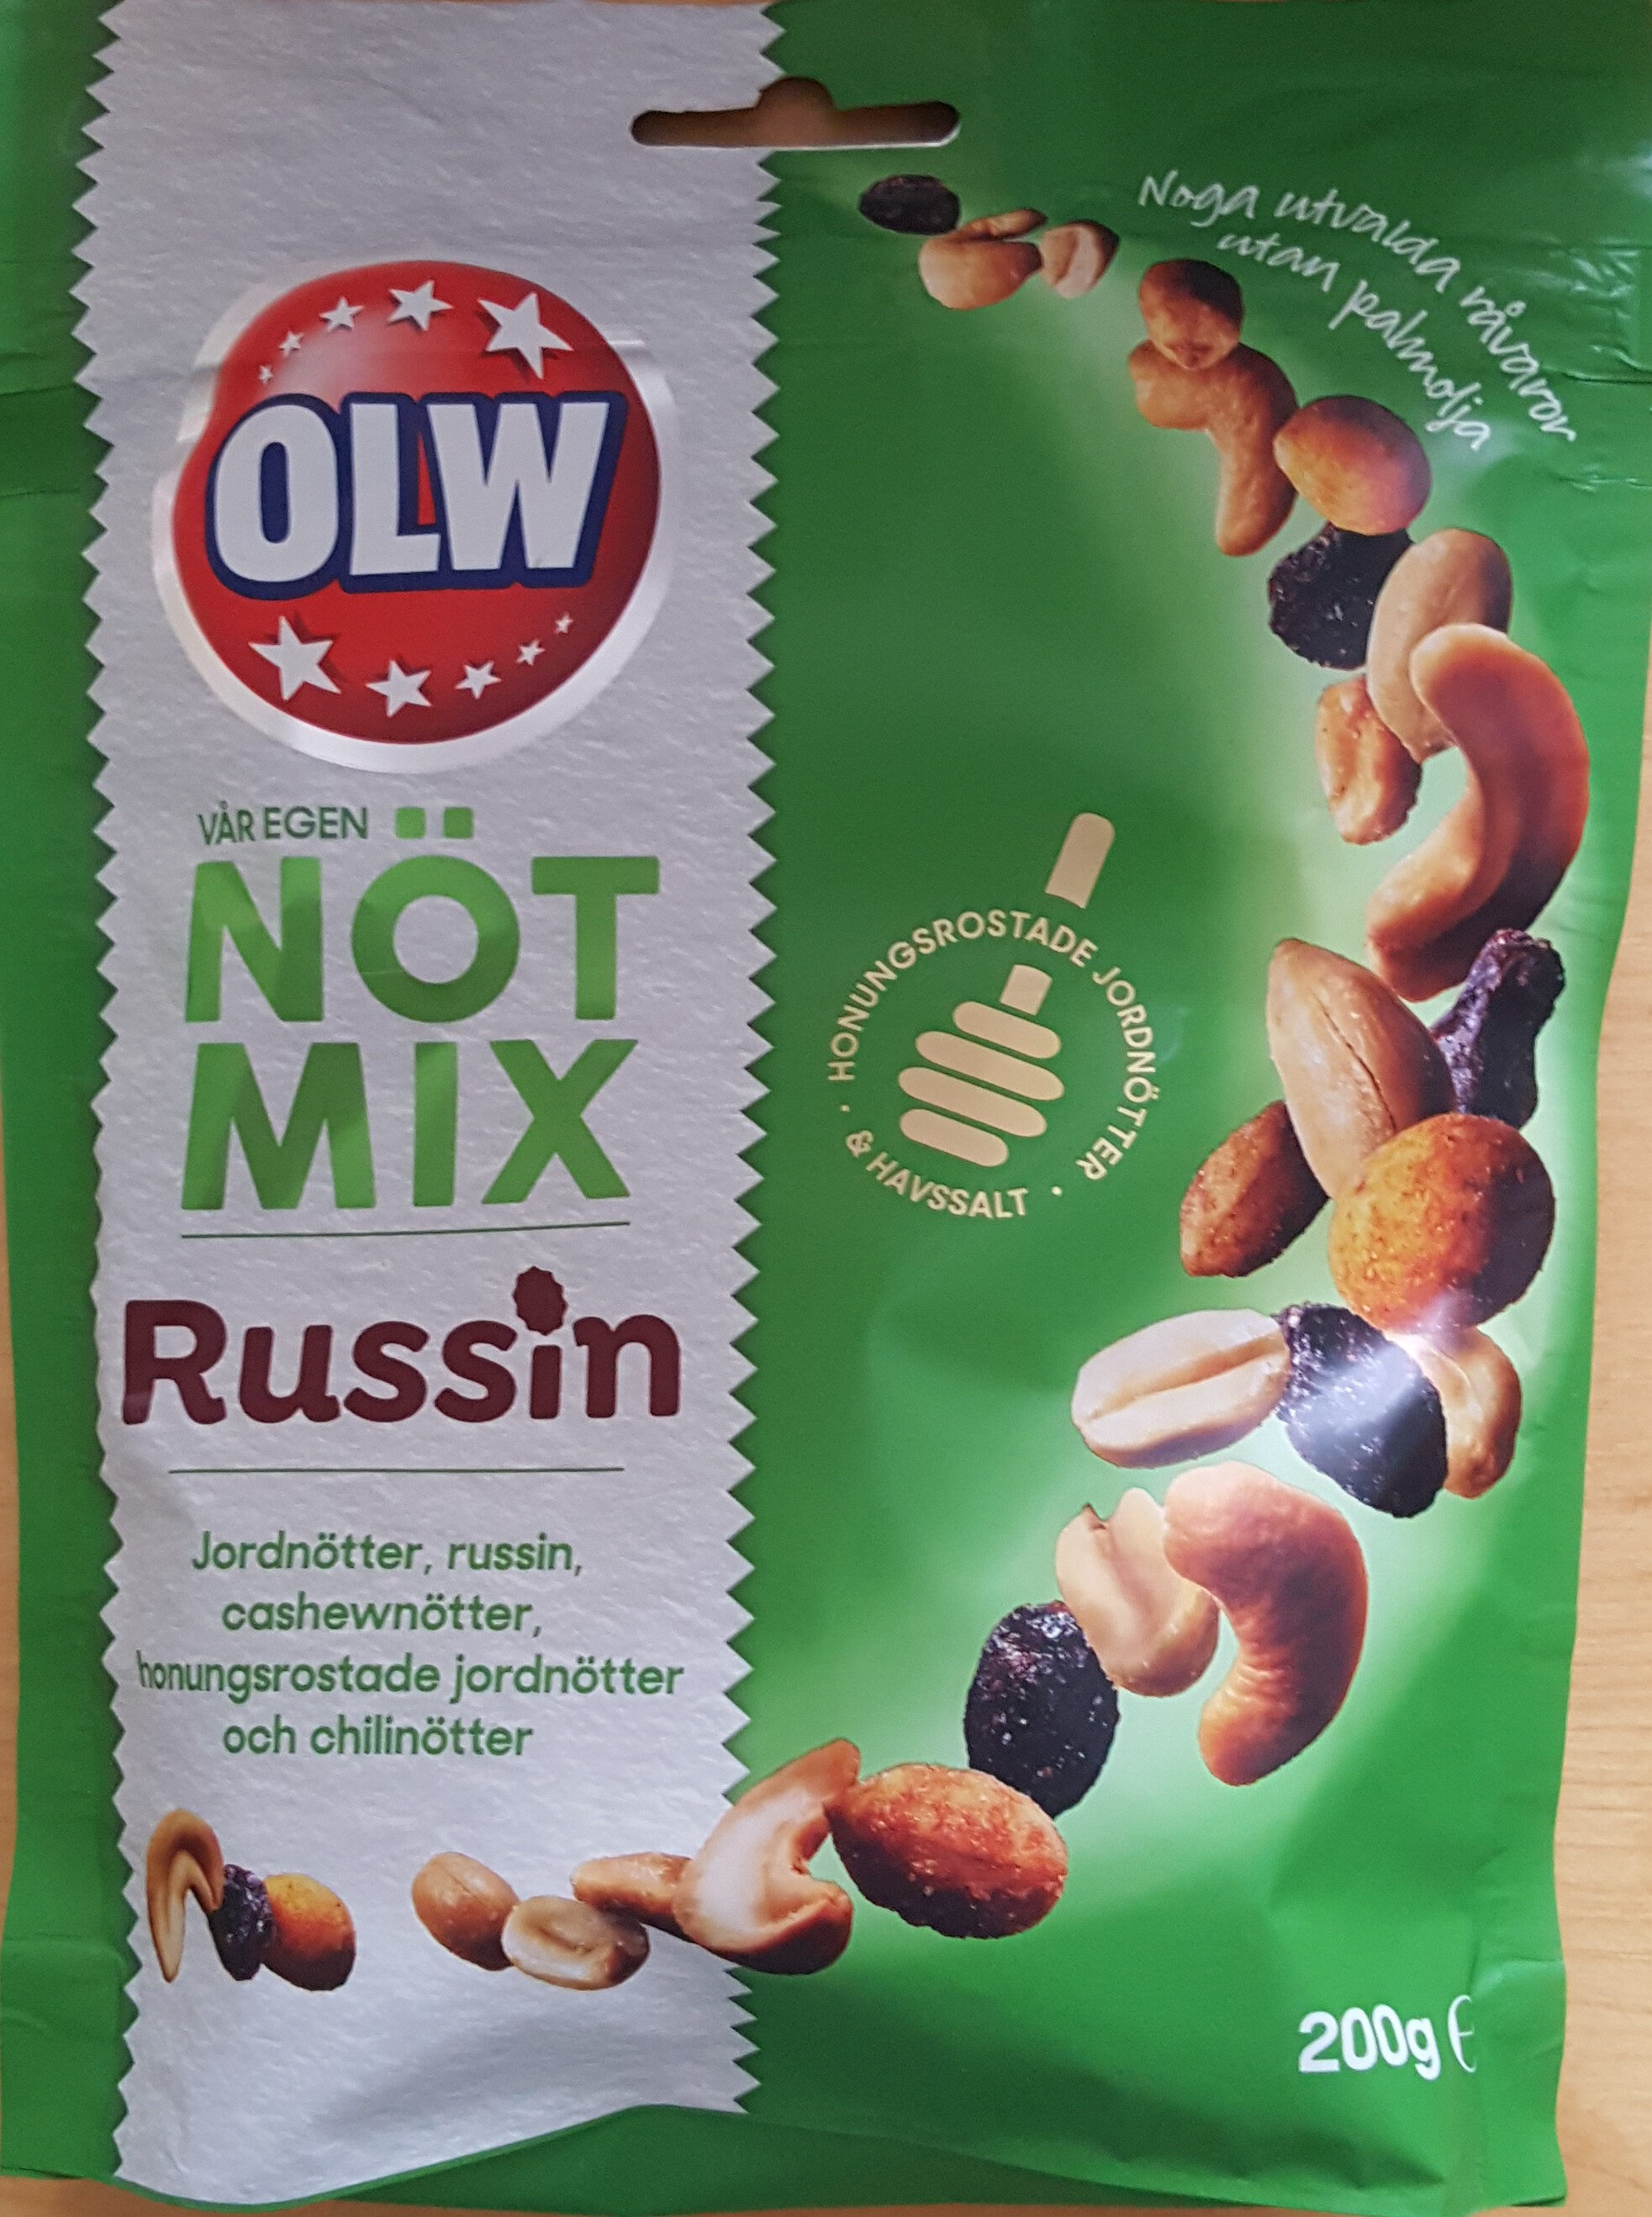 Nöt Mix - Russin - Produkt - sv